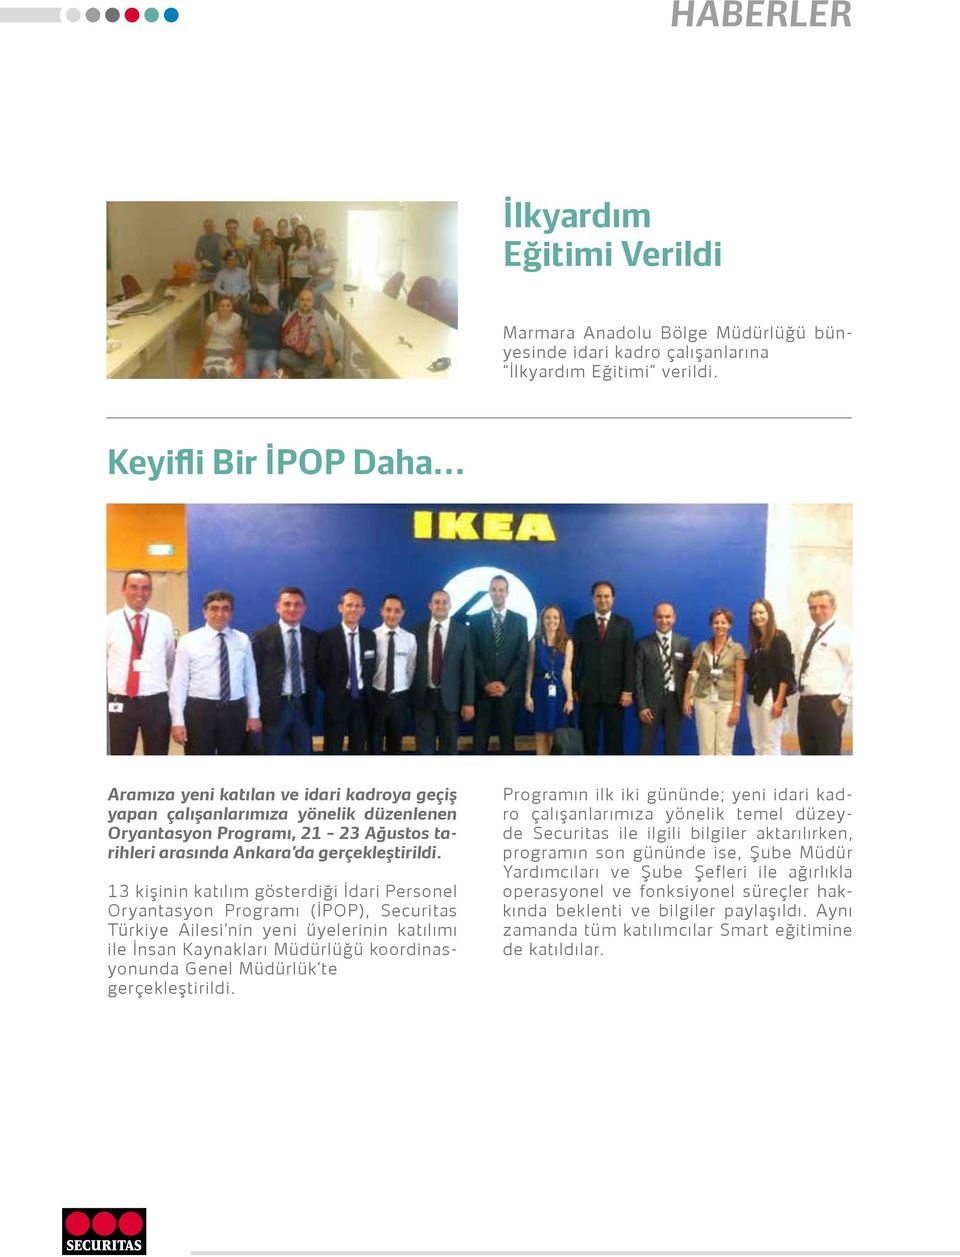 13 kişinin katılım gösterdiği İdari Personel Oryantasyon Programı (İPOP), Securitas Türkiye Ailesi nin yeni üyelerinin katılımı ile İnsan Kaynakları Müdürlüğü koordinasyonunda Genel Müdürlük te